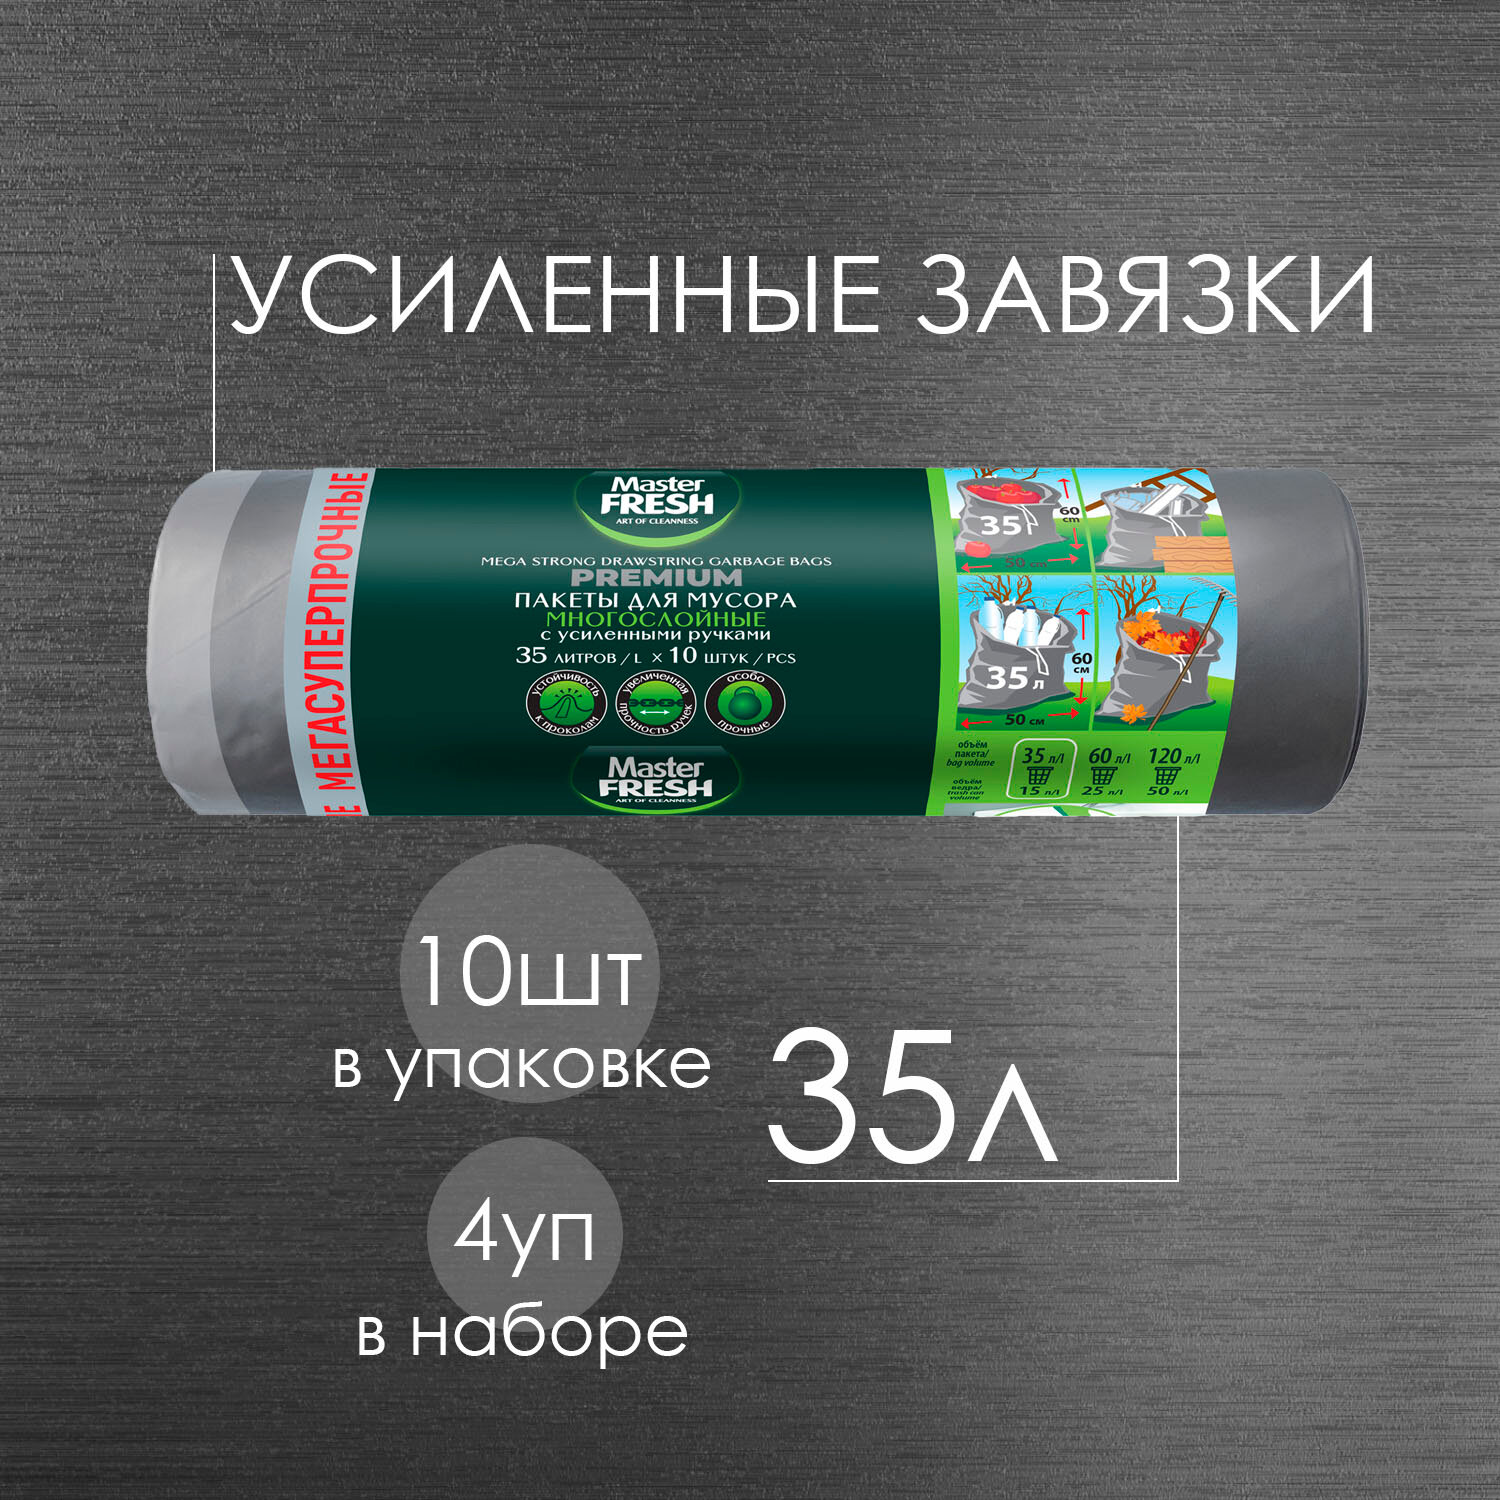 Пакеты для мусора Master Fresh многослойные 35л с усиленными завязками 60мкм* 10шт ( серебро ) мегасуперпрочные ( 4 шт )